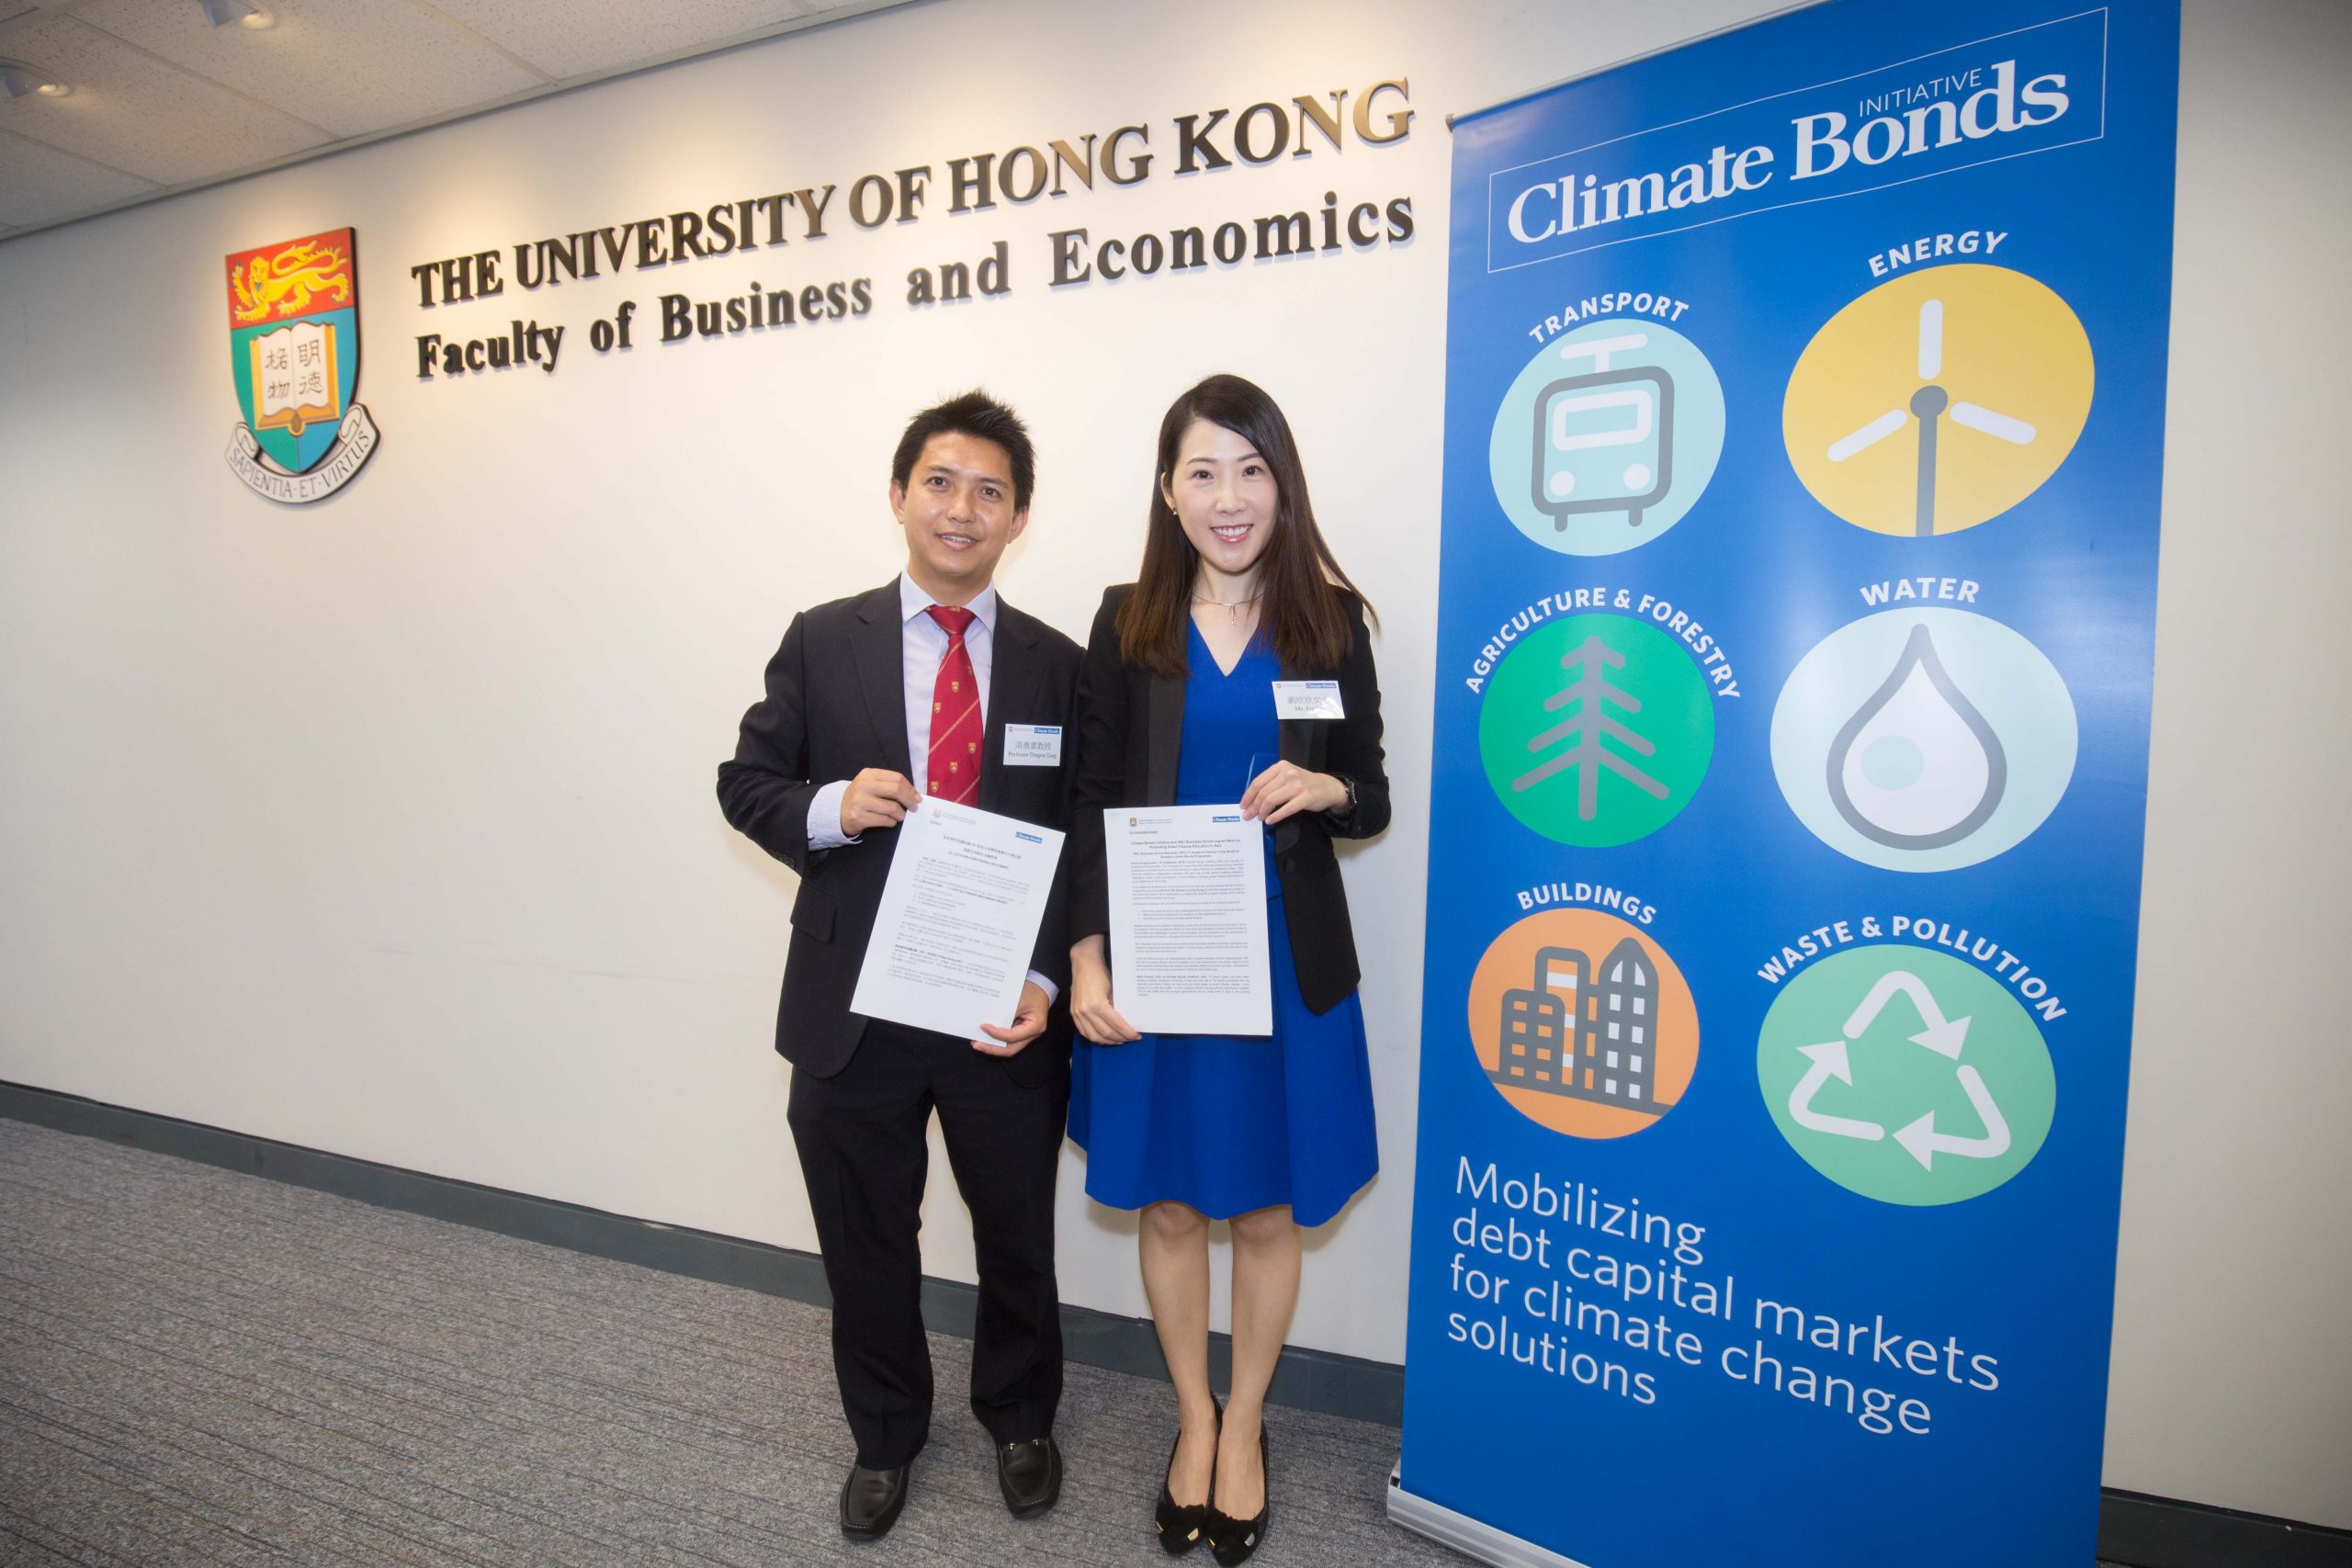 學院成為氣候債券倡議組織（CBI）在全球的首個學術合作夥伴，旨在開發綠色債券計劃並促進綠色金融教育